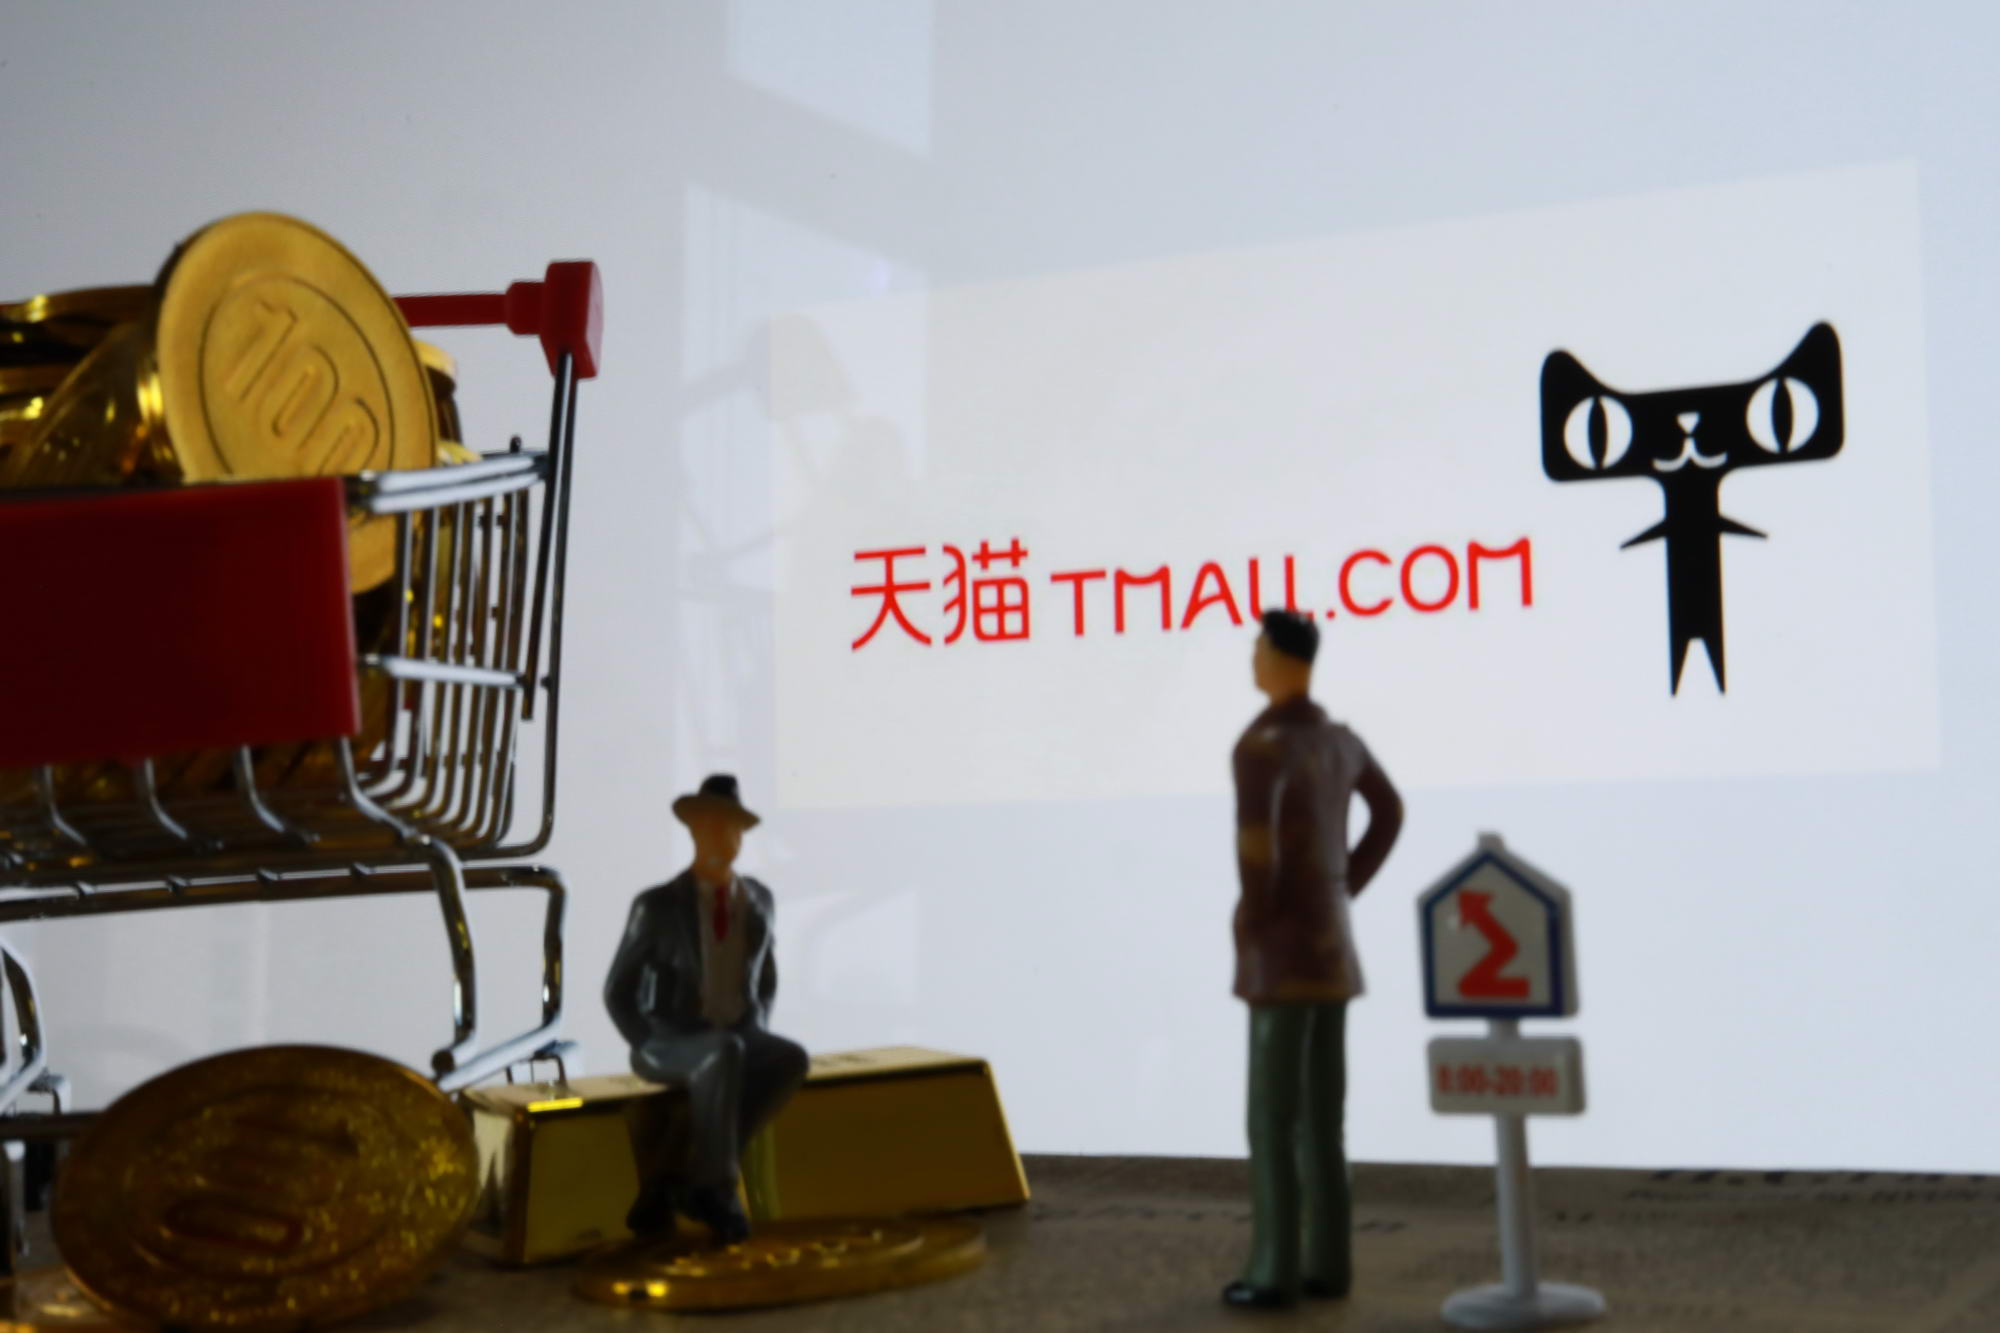 天津天猫电子商务公司注册资本增加 1900%，达到 4000 万元